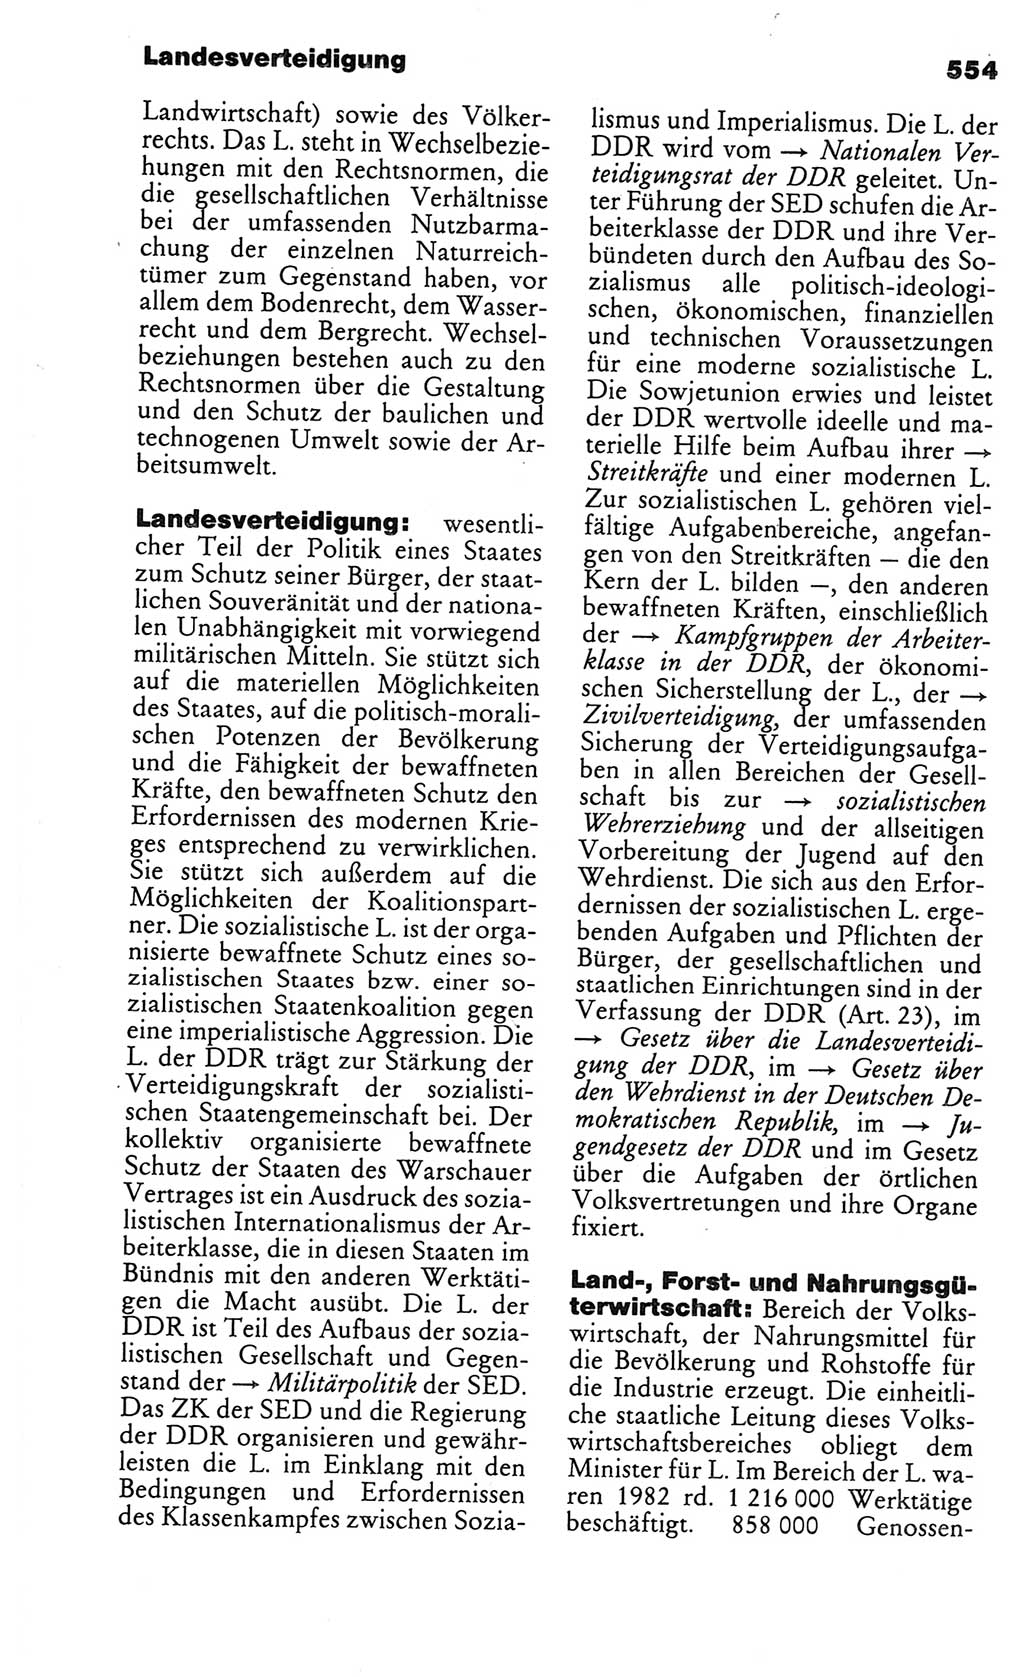 Kleines politisches Wörterbuch [Deutsche Demokratische Republik (DDR)] 1986, Seite 554 (Kl. pol. Wb. DDR 1986, S. 554)